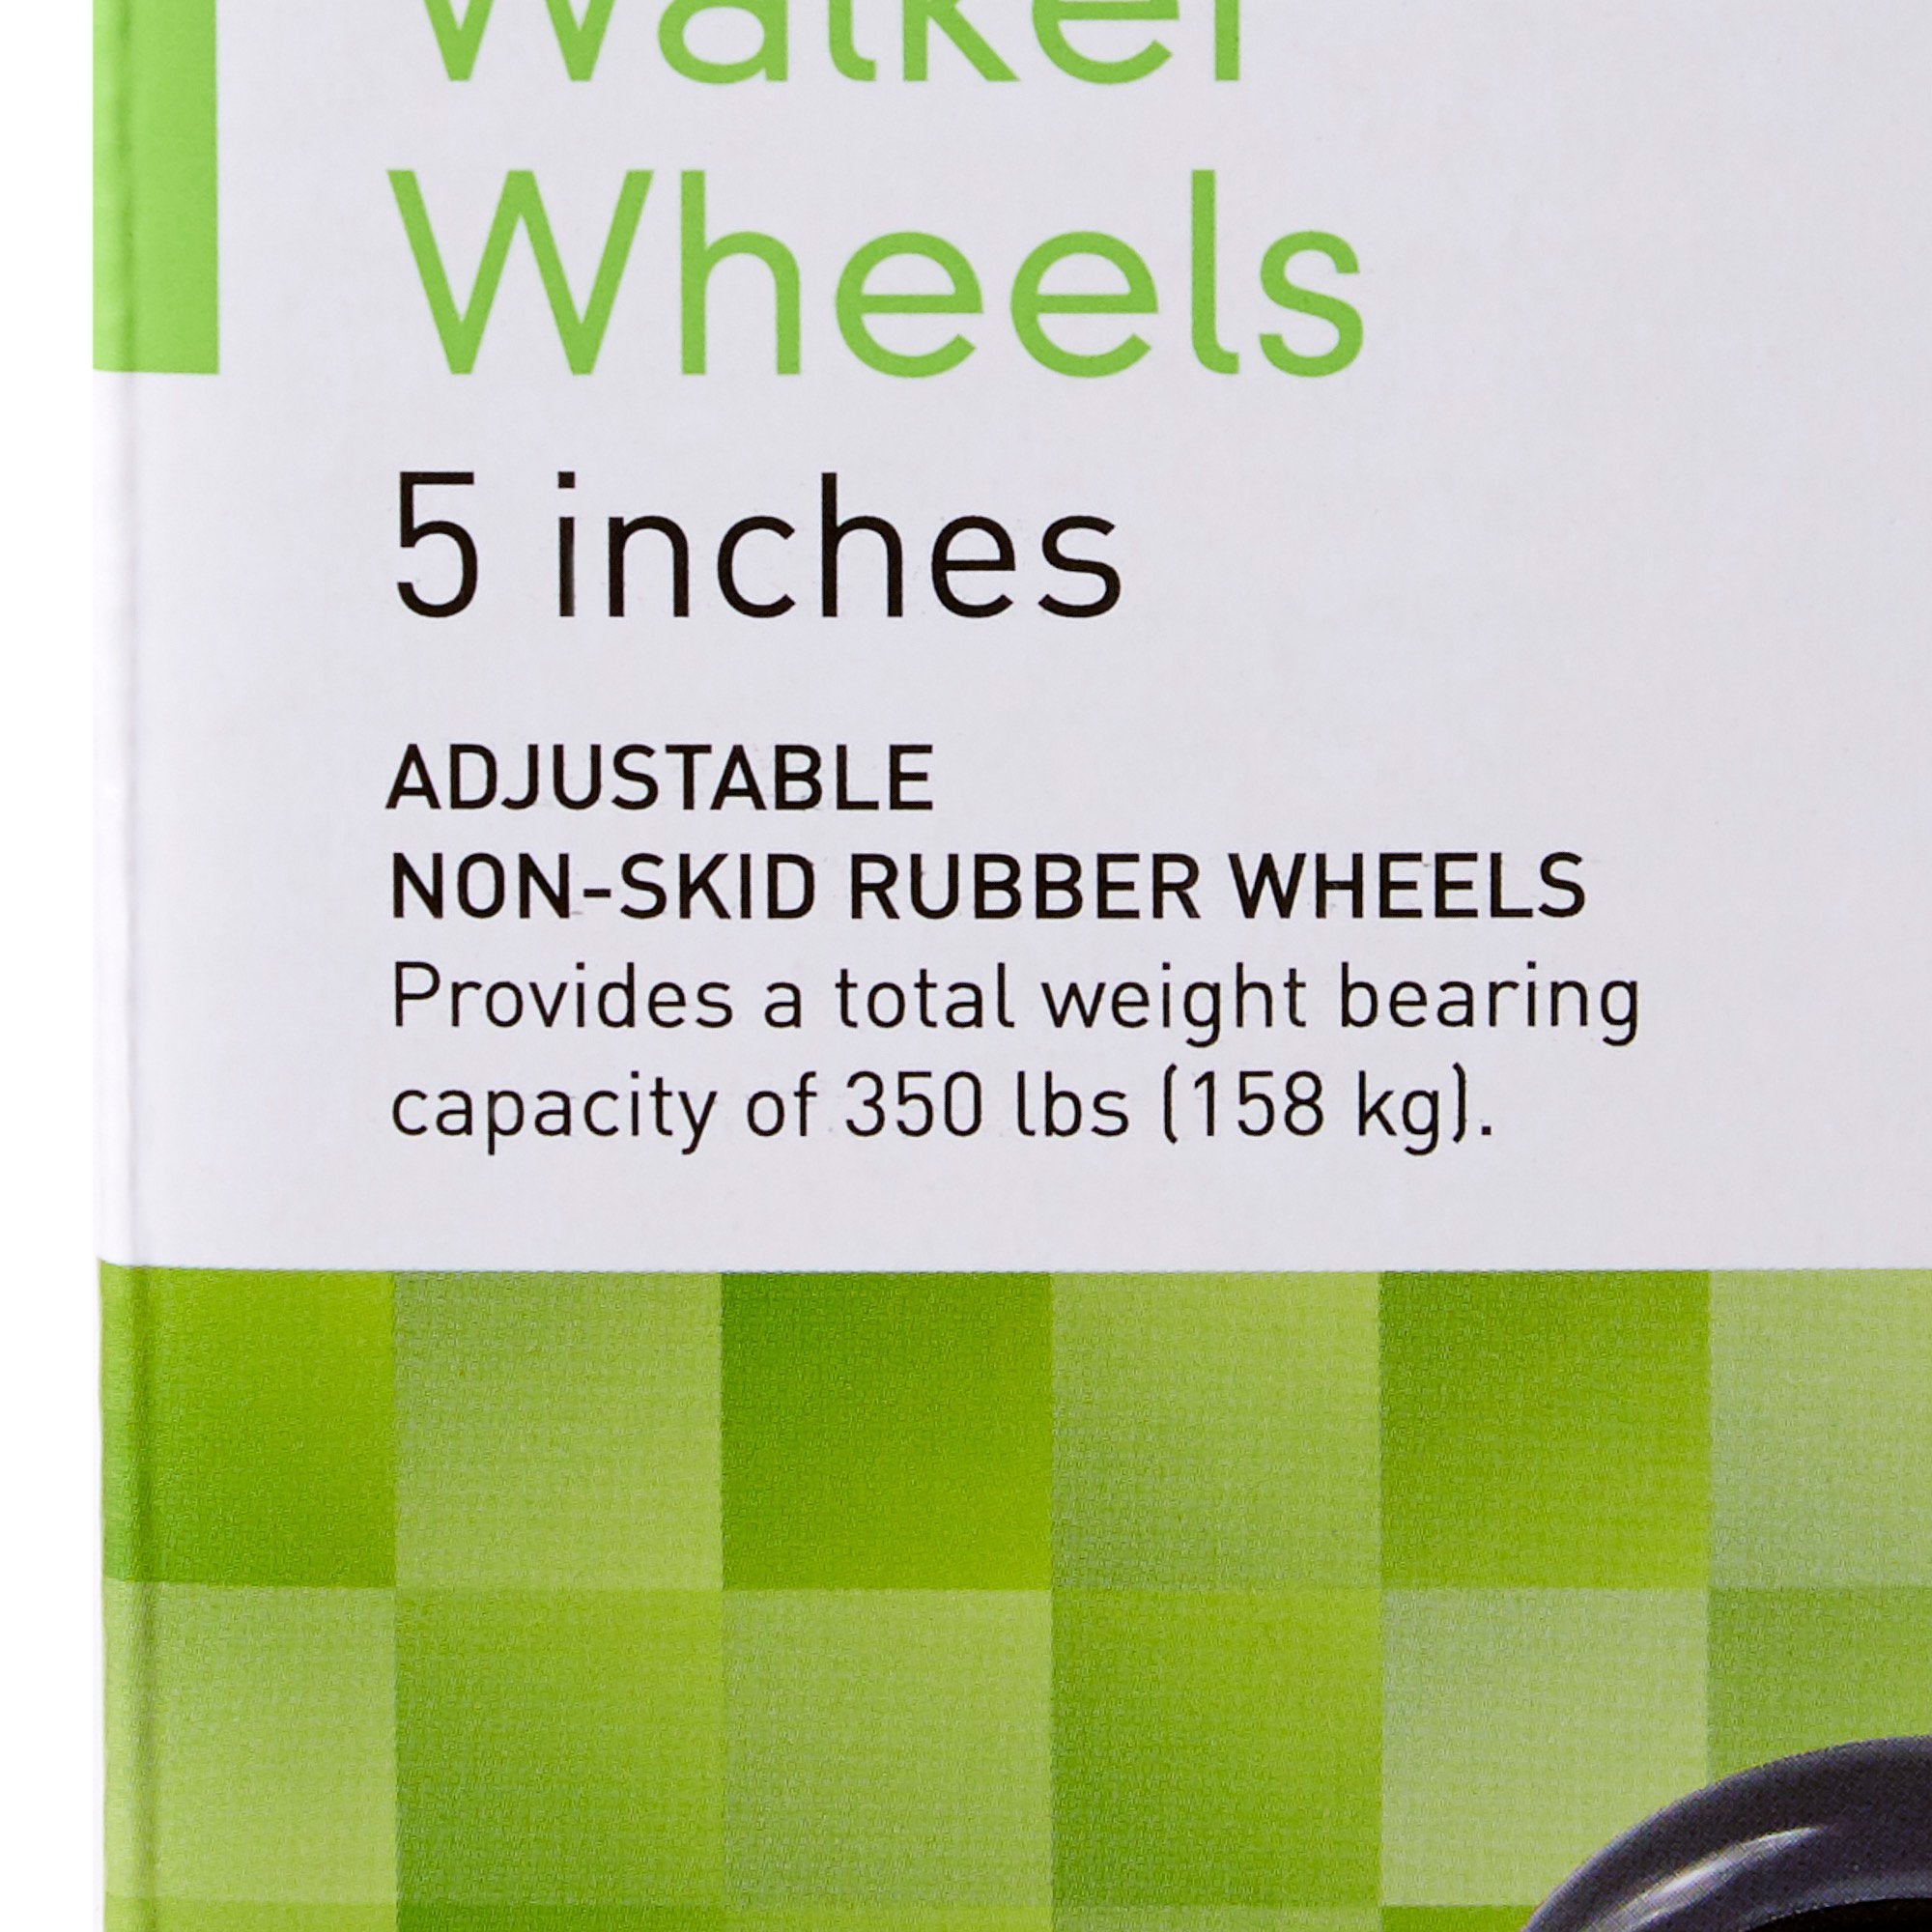 5 Inch Universal Walker Wheel Kit